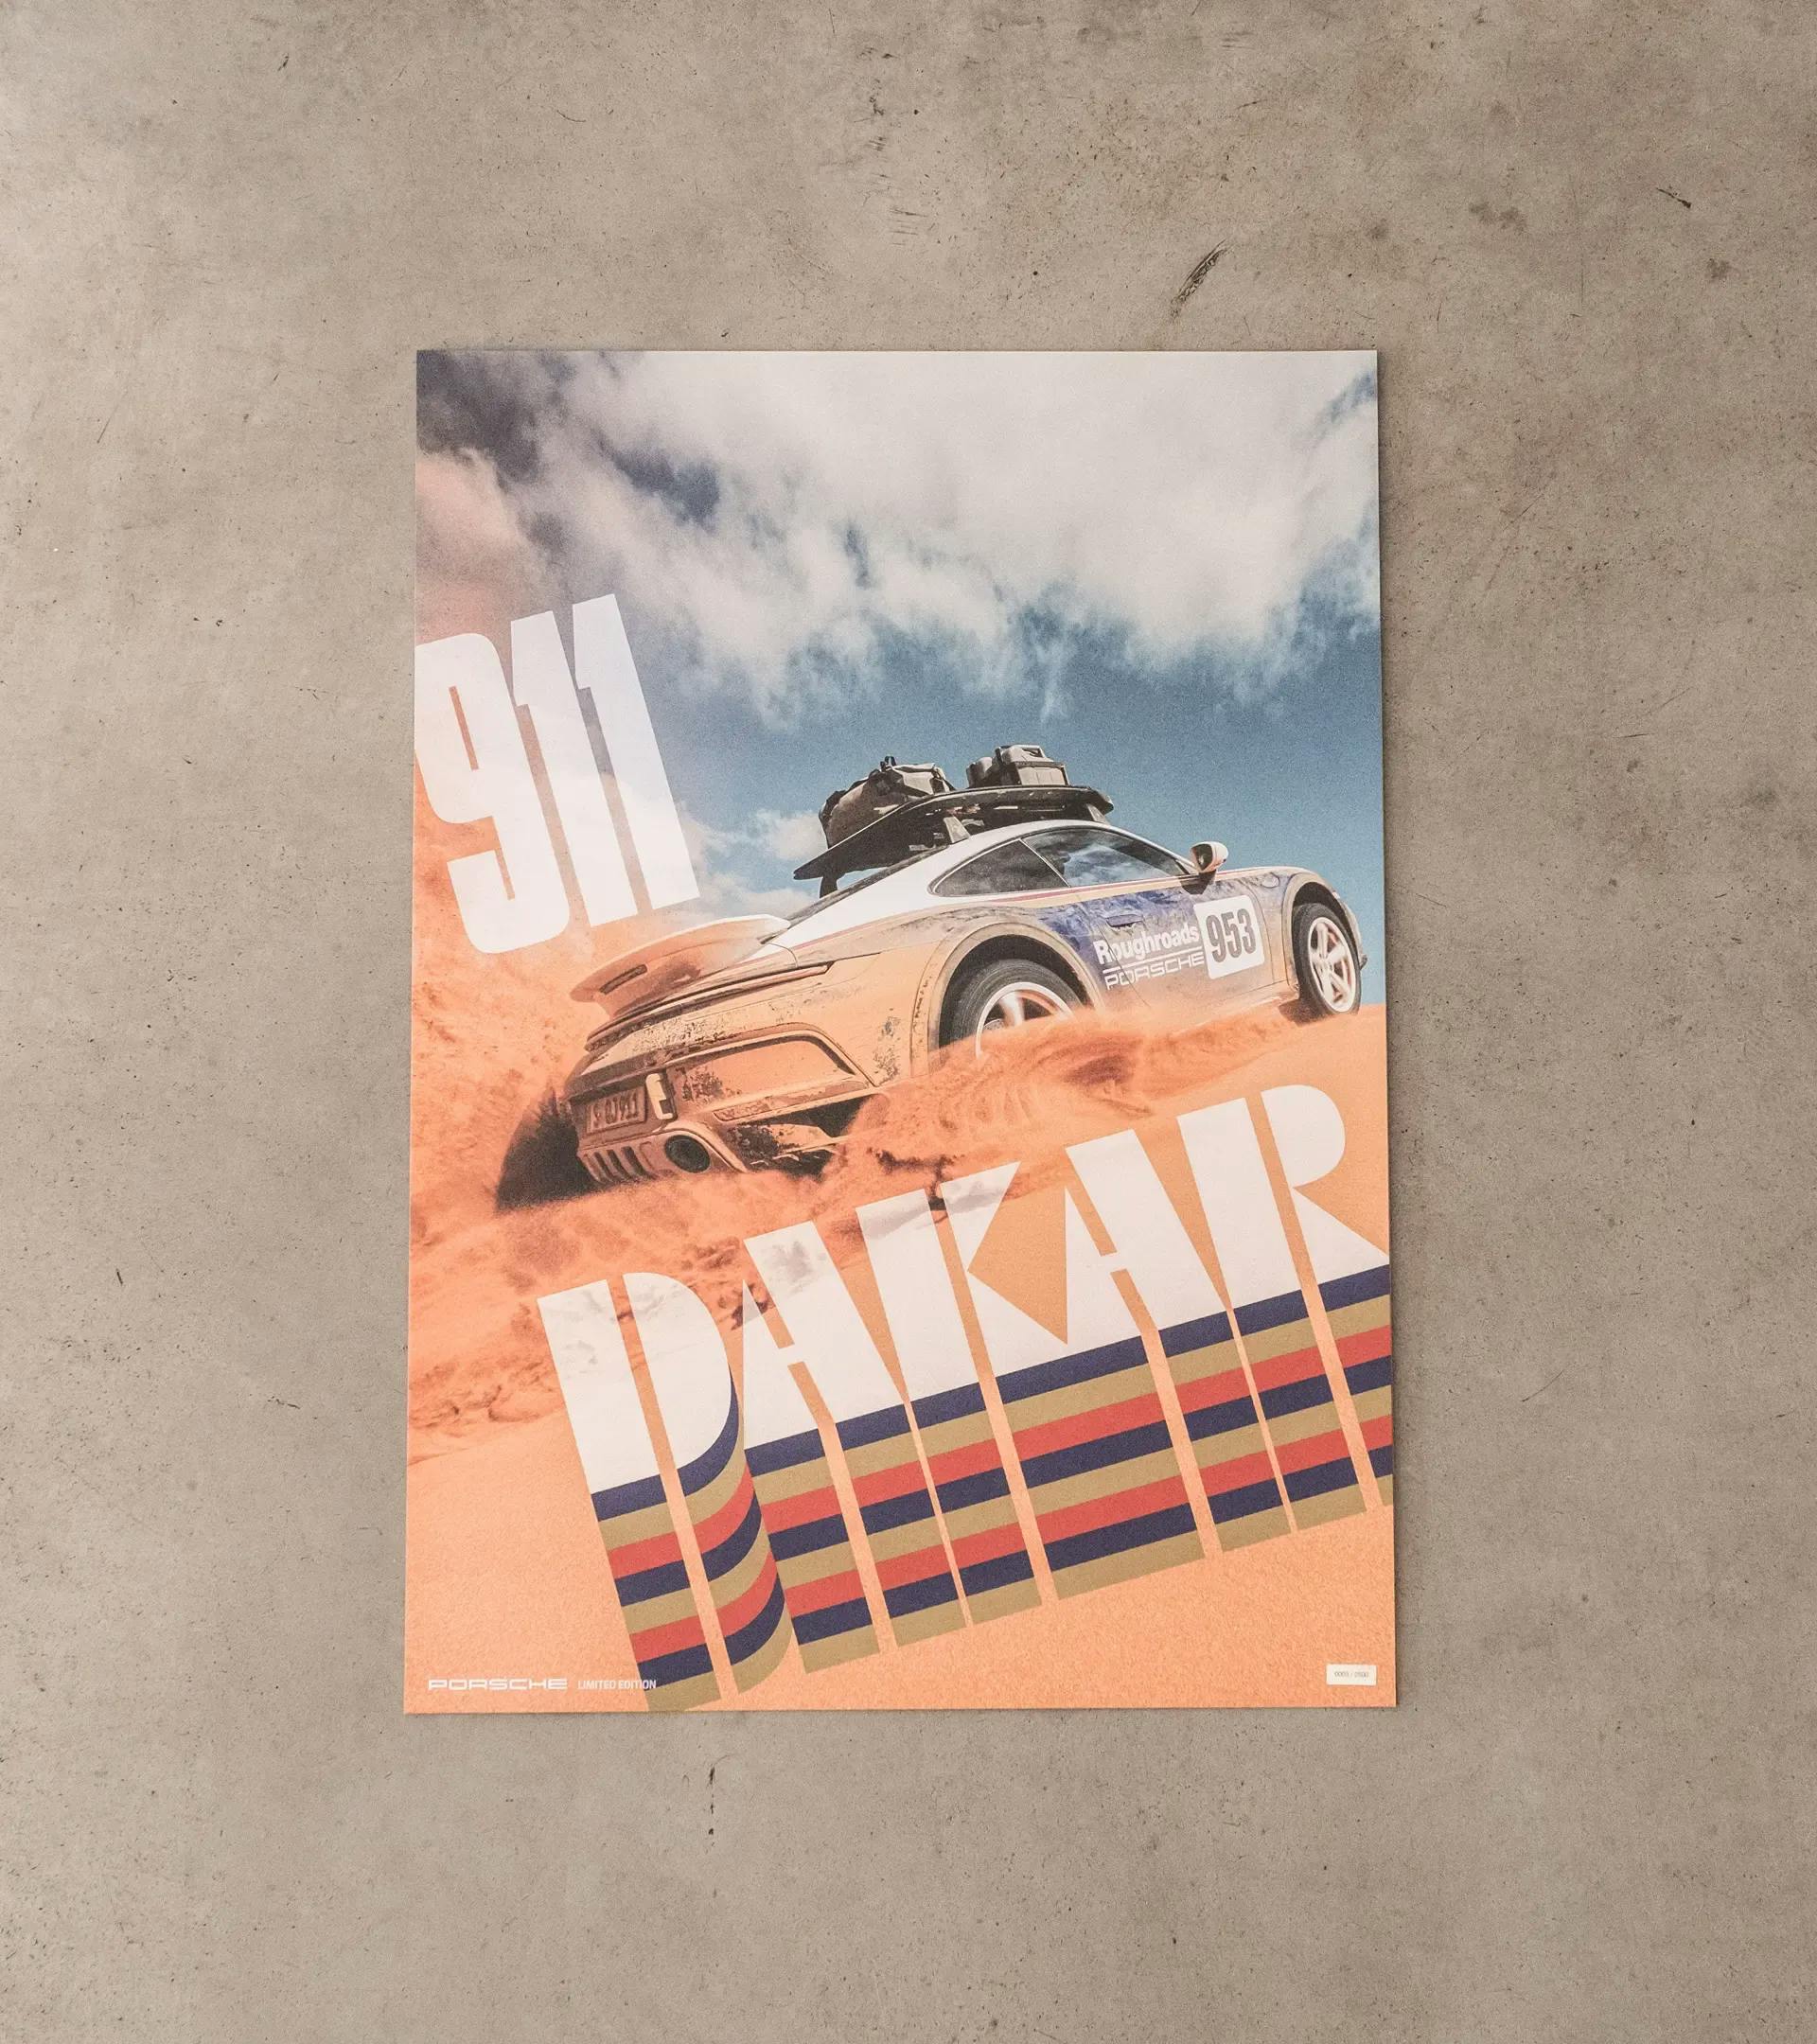 Posterset - 911 Dakar 2